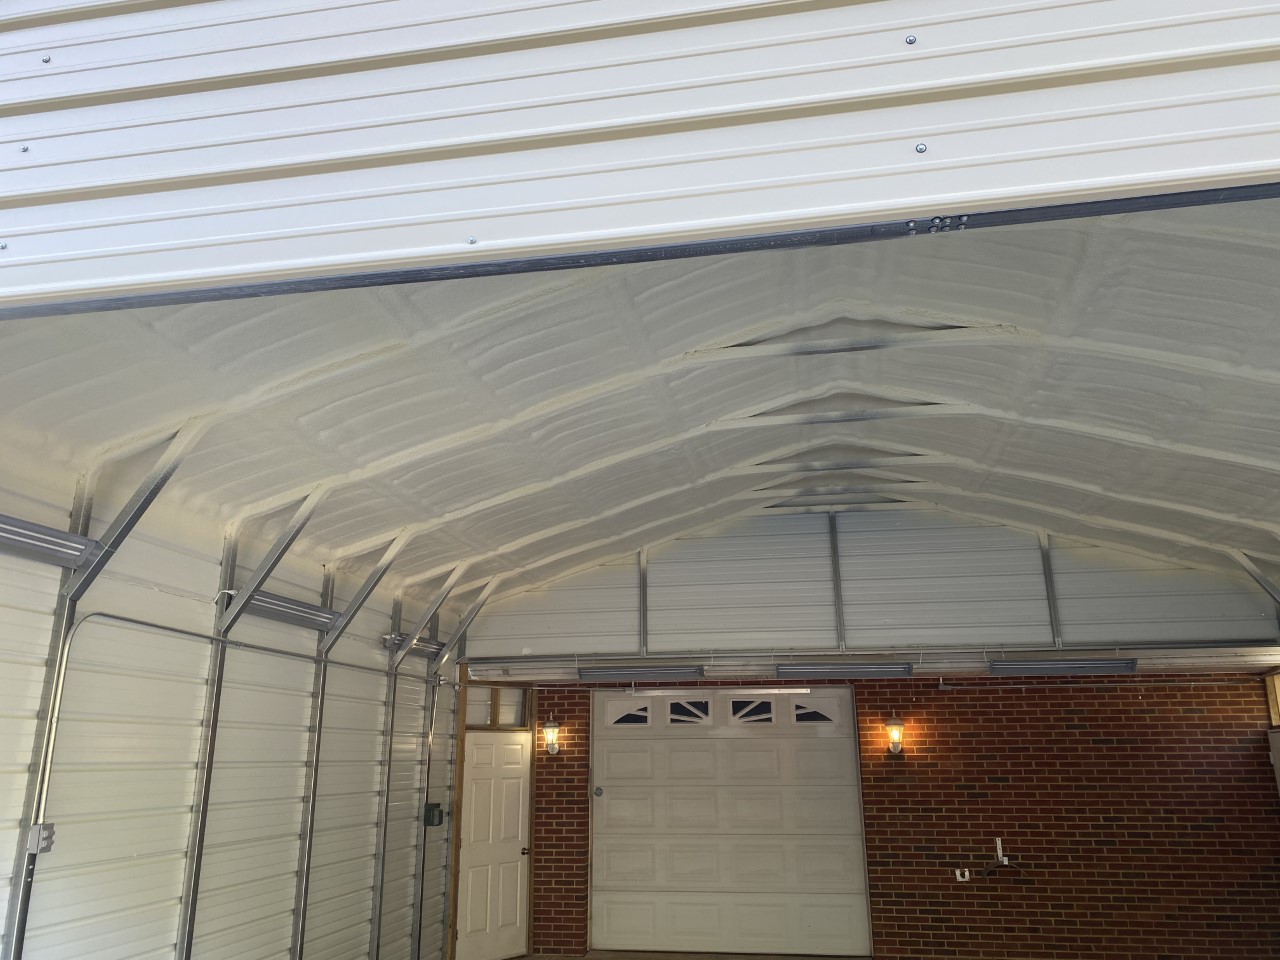 Spray foam insulation applied to a metal garage in richmond va